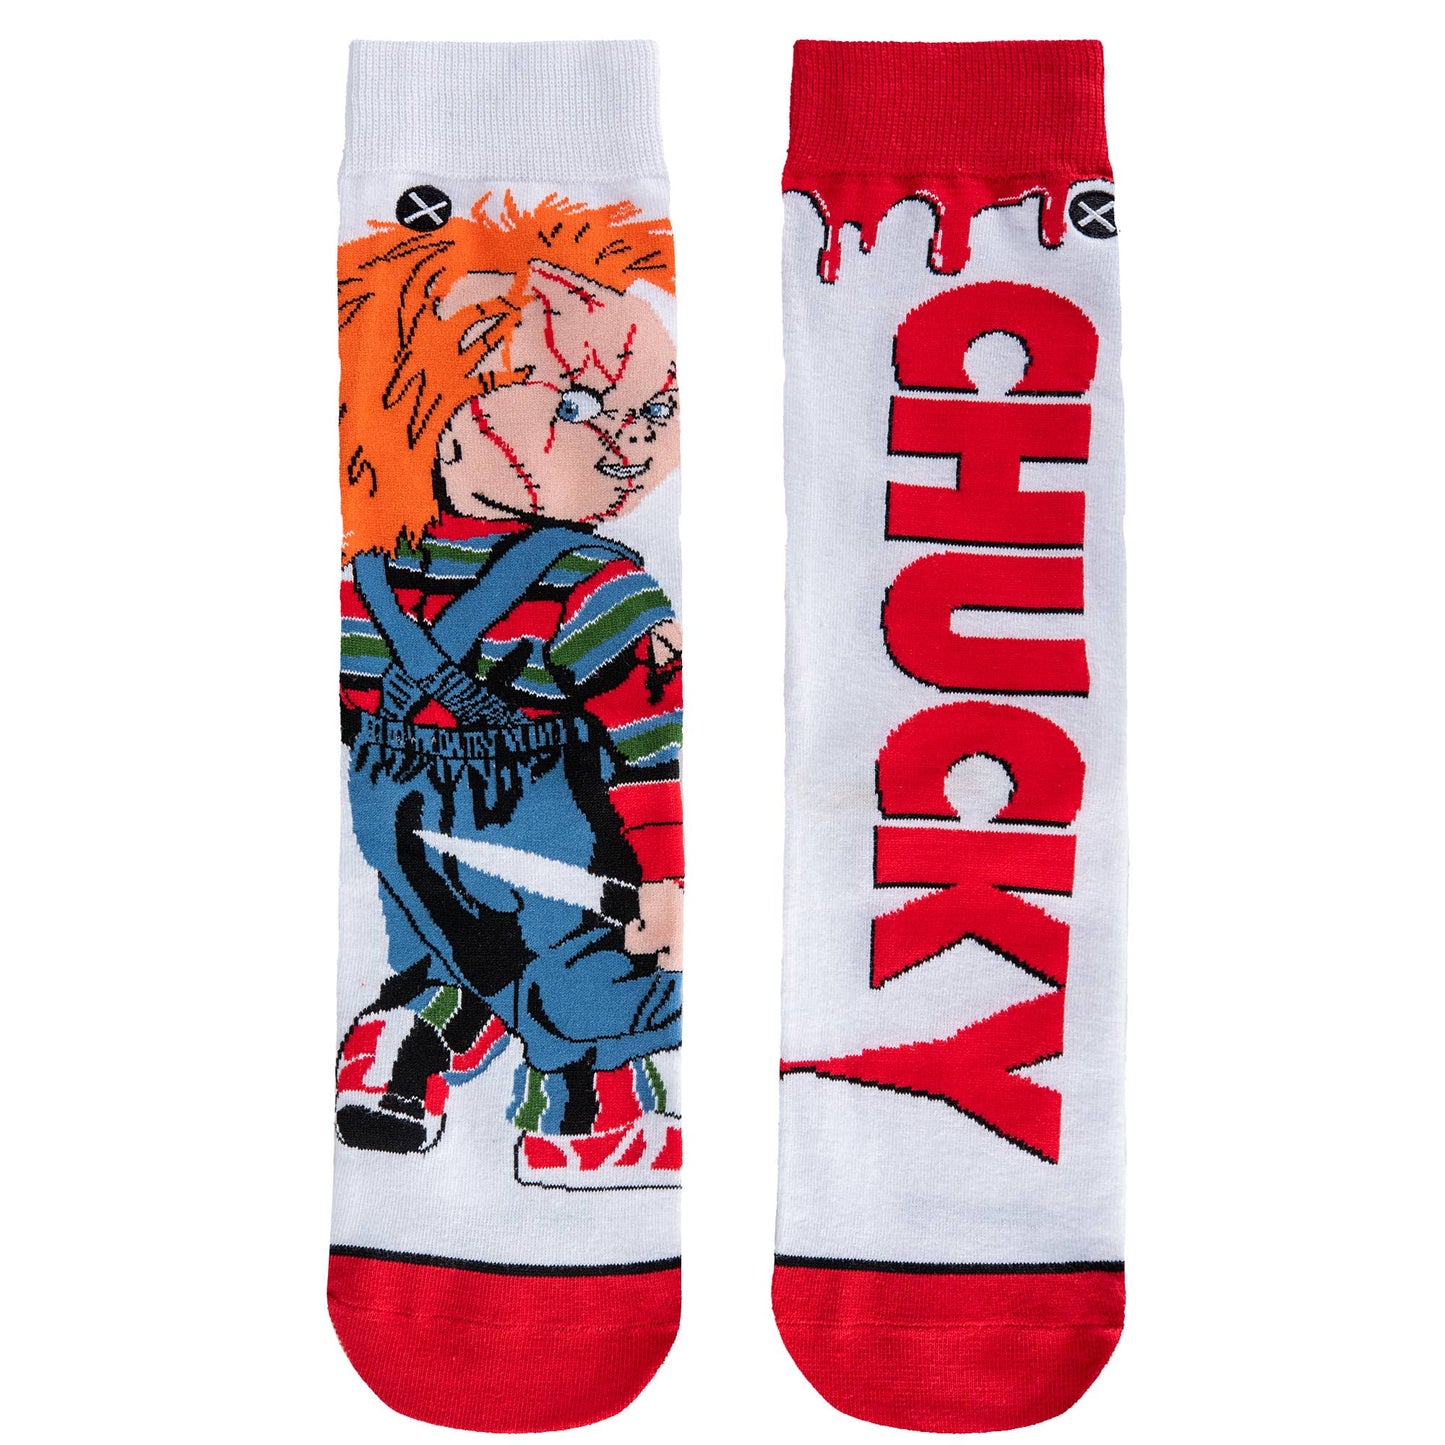 Chucky's Revenge Mix Match Knit Crew Socks